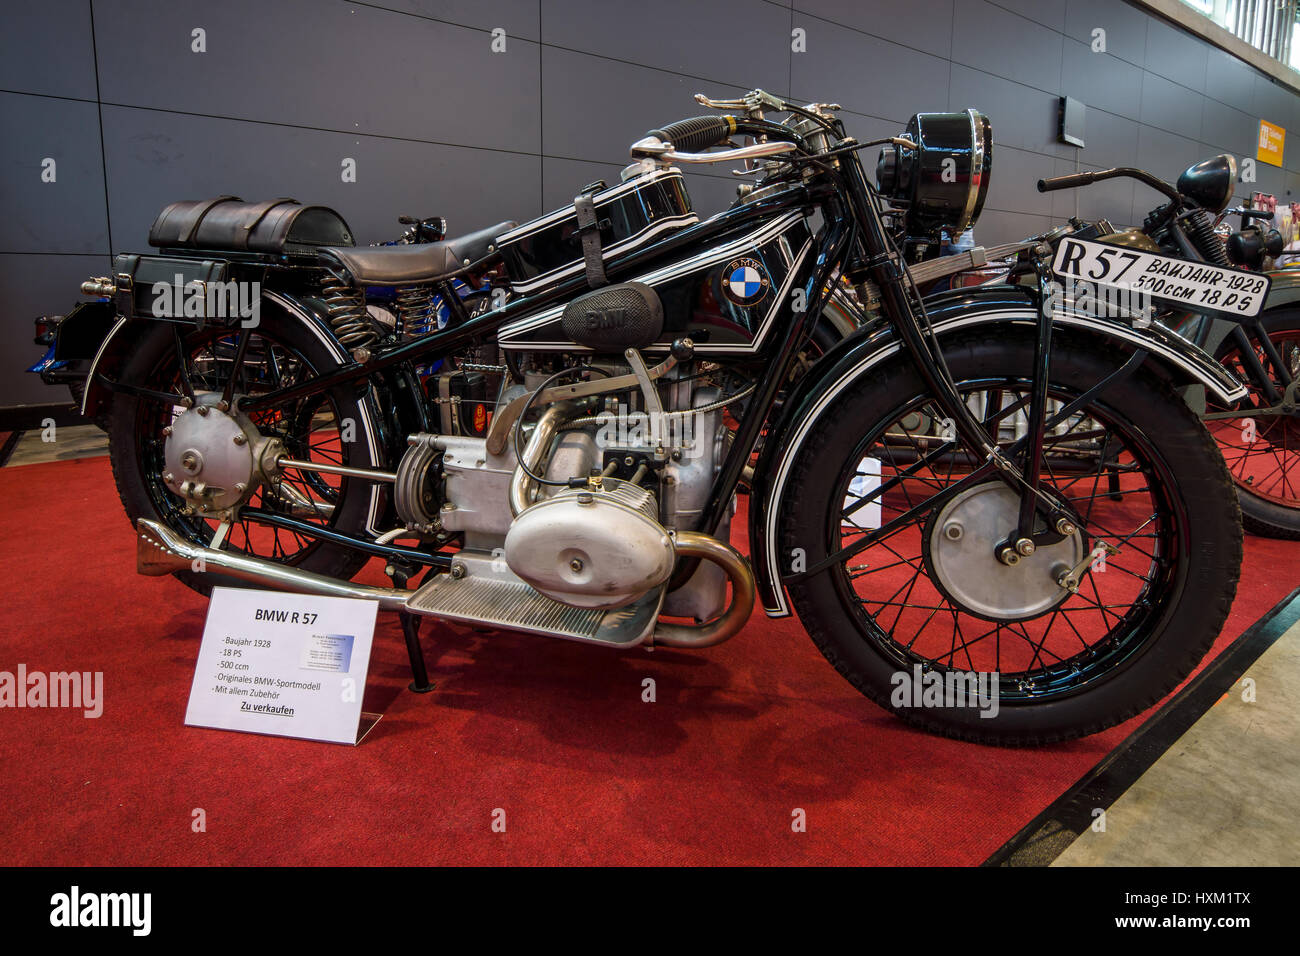 STUTTGART, Germania - 02 Marzo 2017: moto sportive BMW R57, 1928. In Europa il più grande classico auto exhibition 'retrò classici' Foto Stock